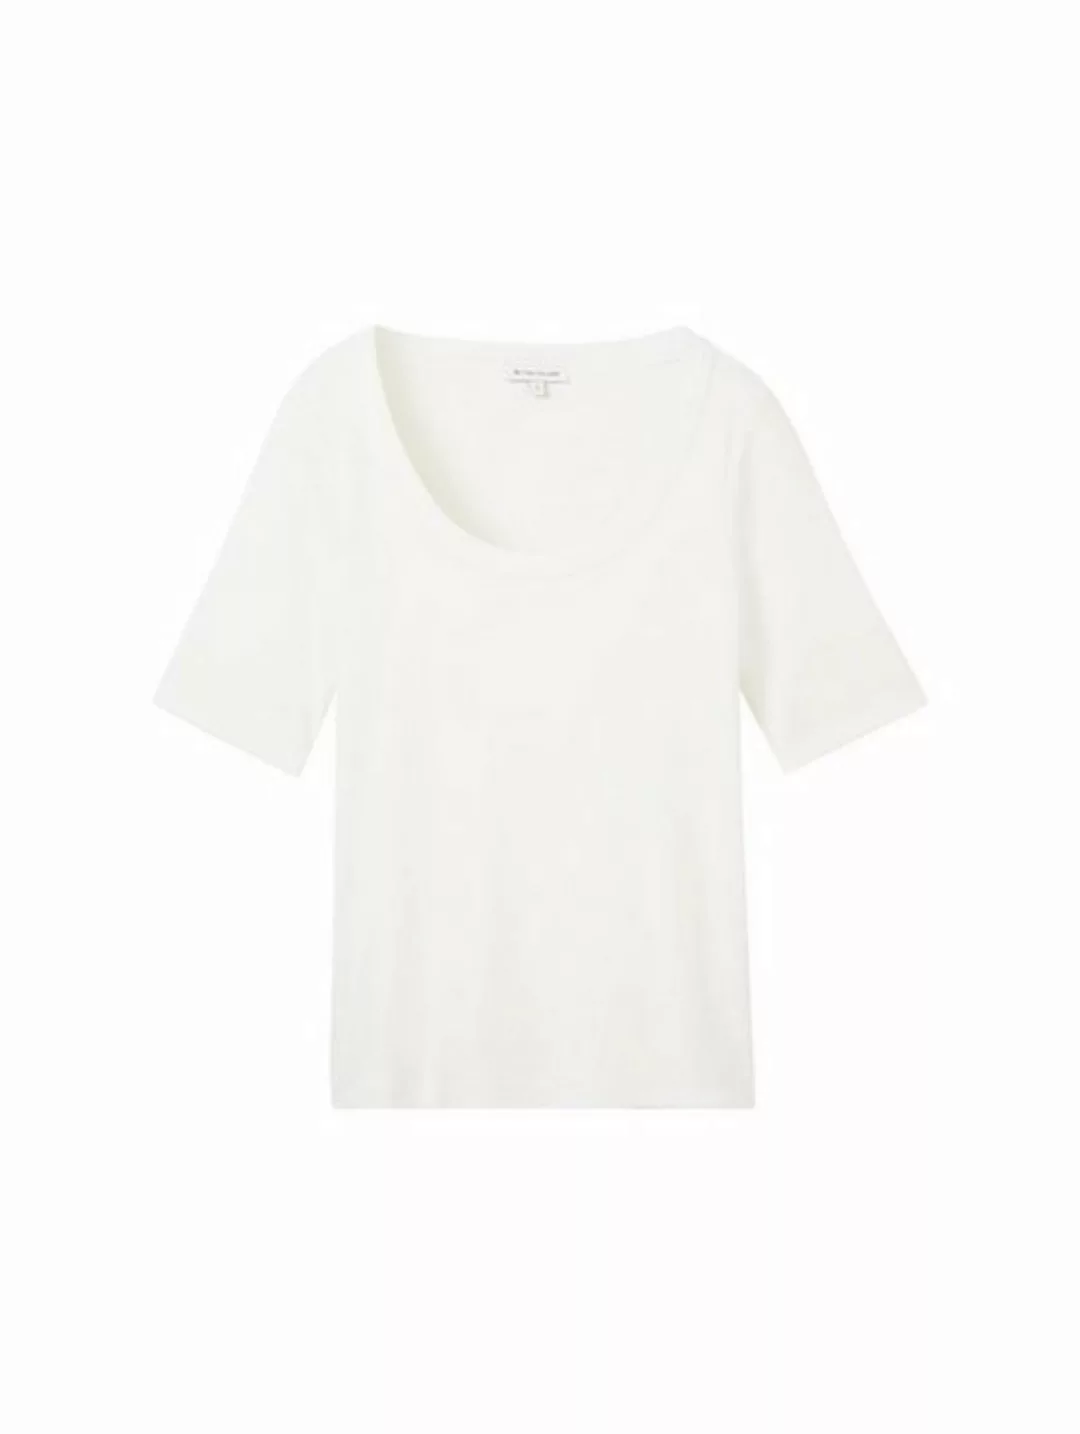 TOM TAILOR T-Shirt T-shirt rib wide crew neck günstig online kaufen